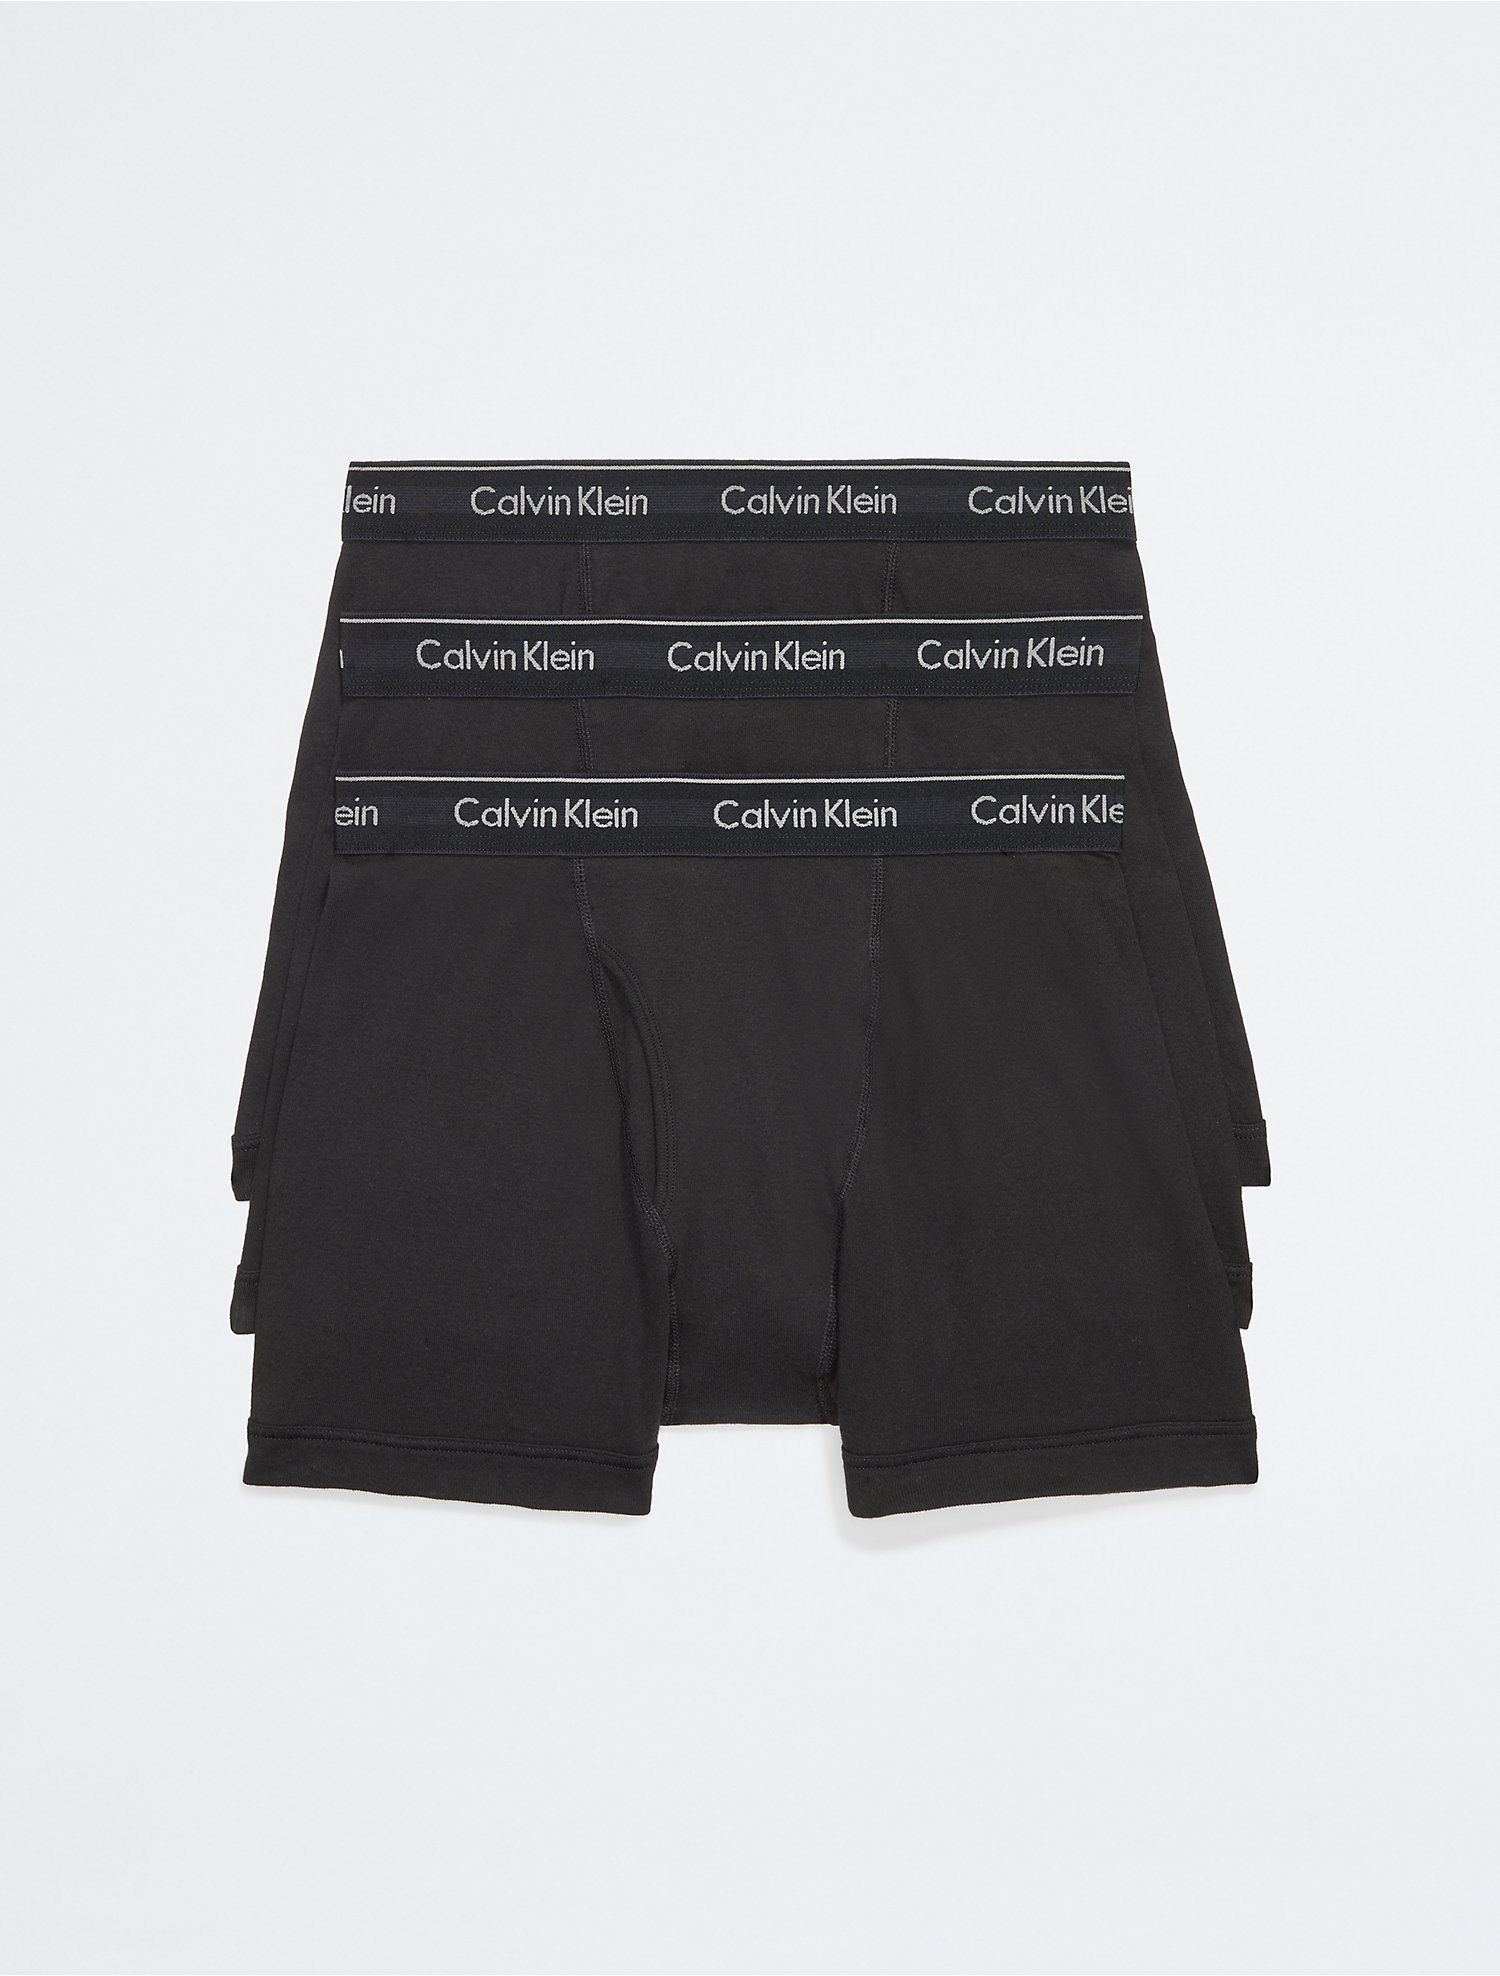 Manifesteren wastafel chirurg Cotton Classics 3-Pack Boxer Brief | Calvin Klein